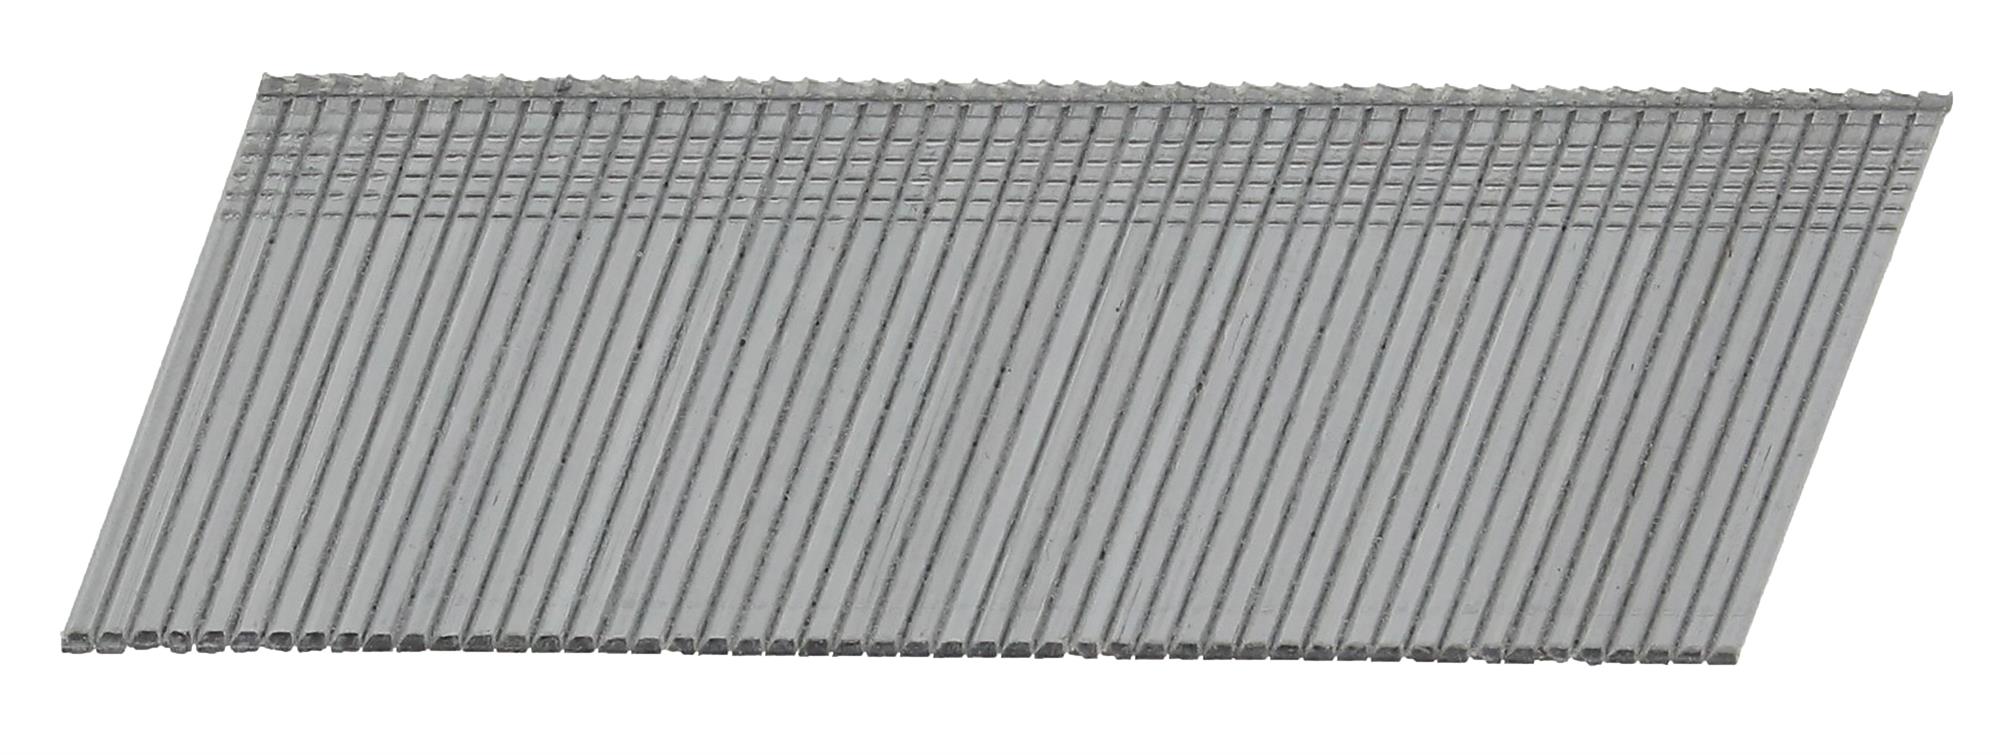 Hřebíky FeZn Paslode AF16 20° hladké 1,6×64 mm 2 000 ks